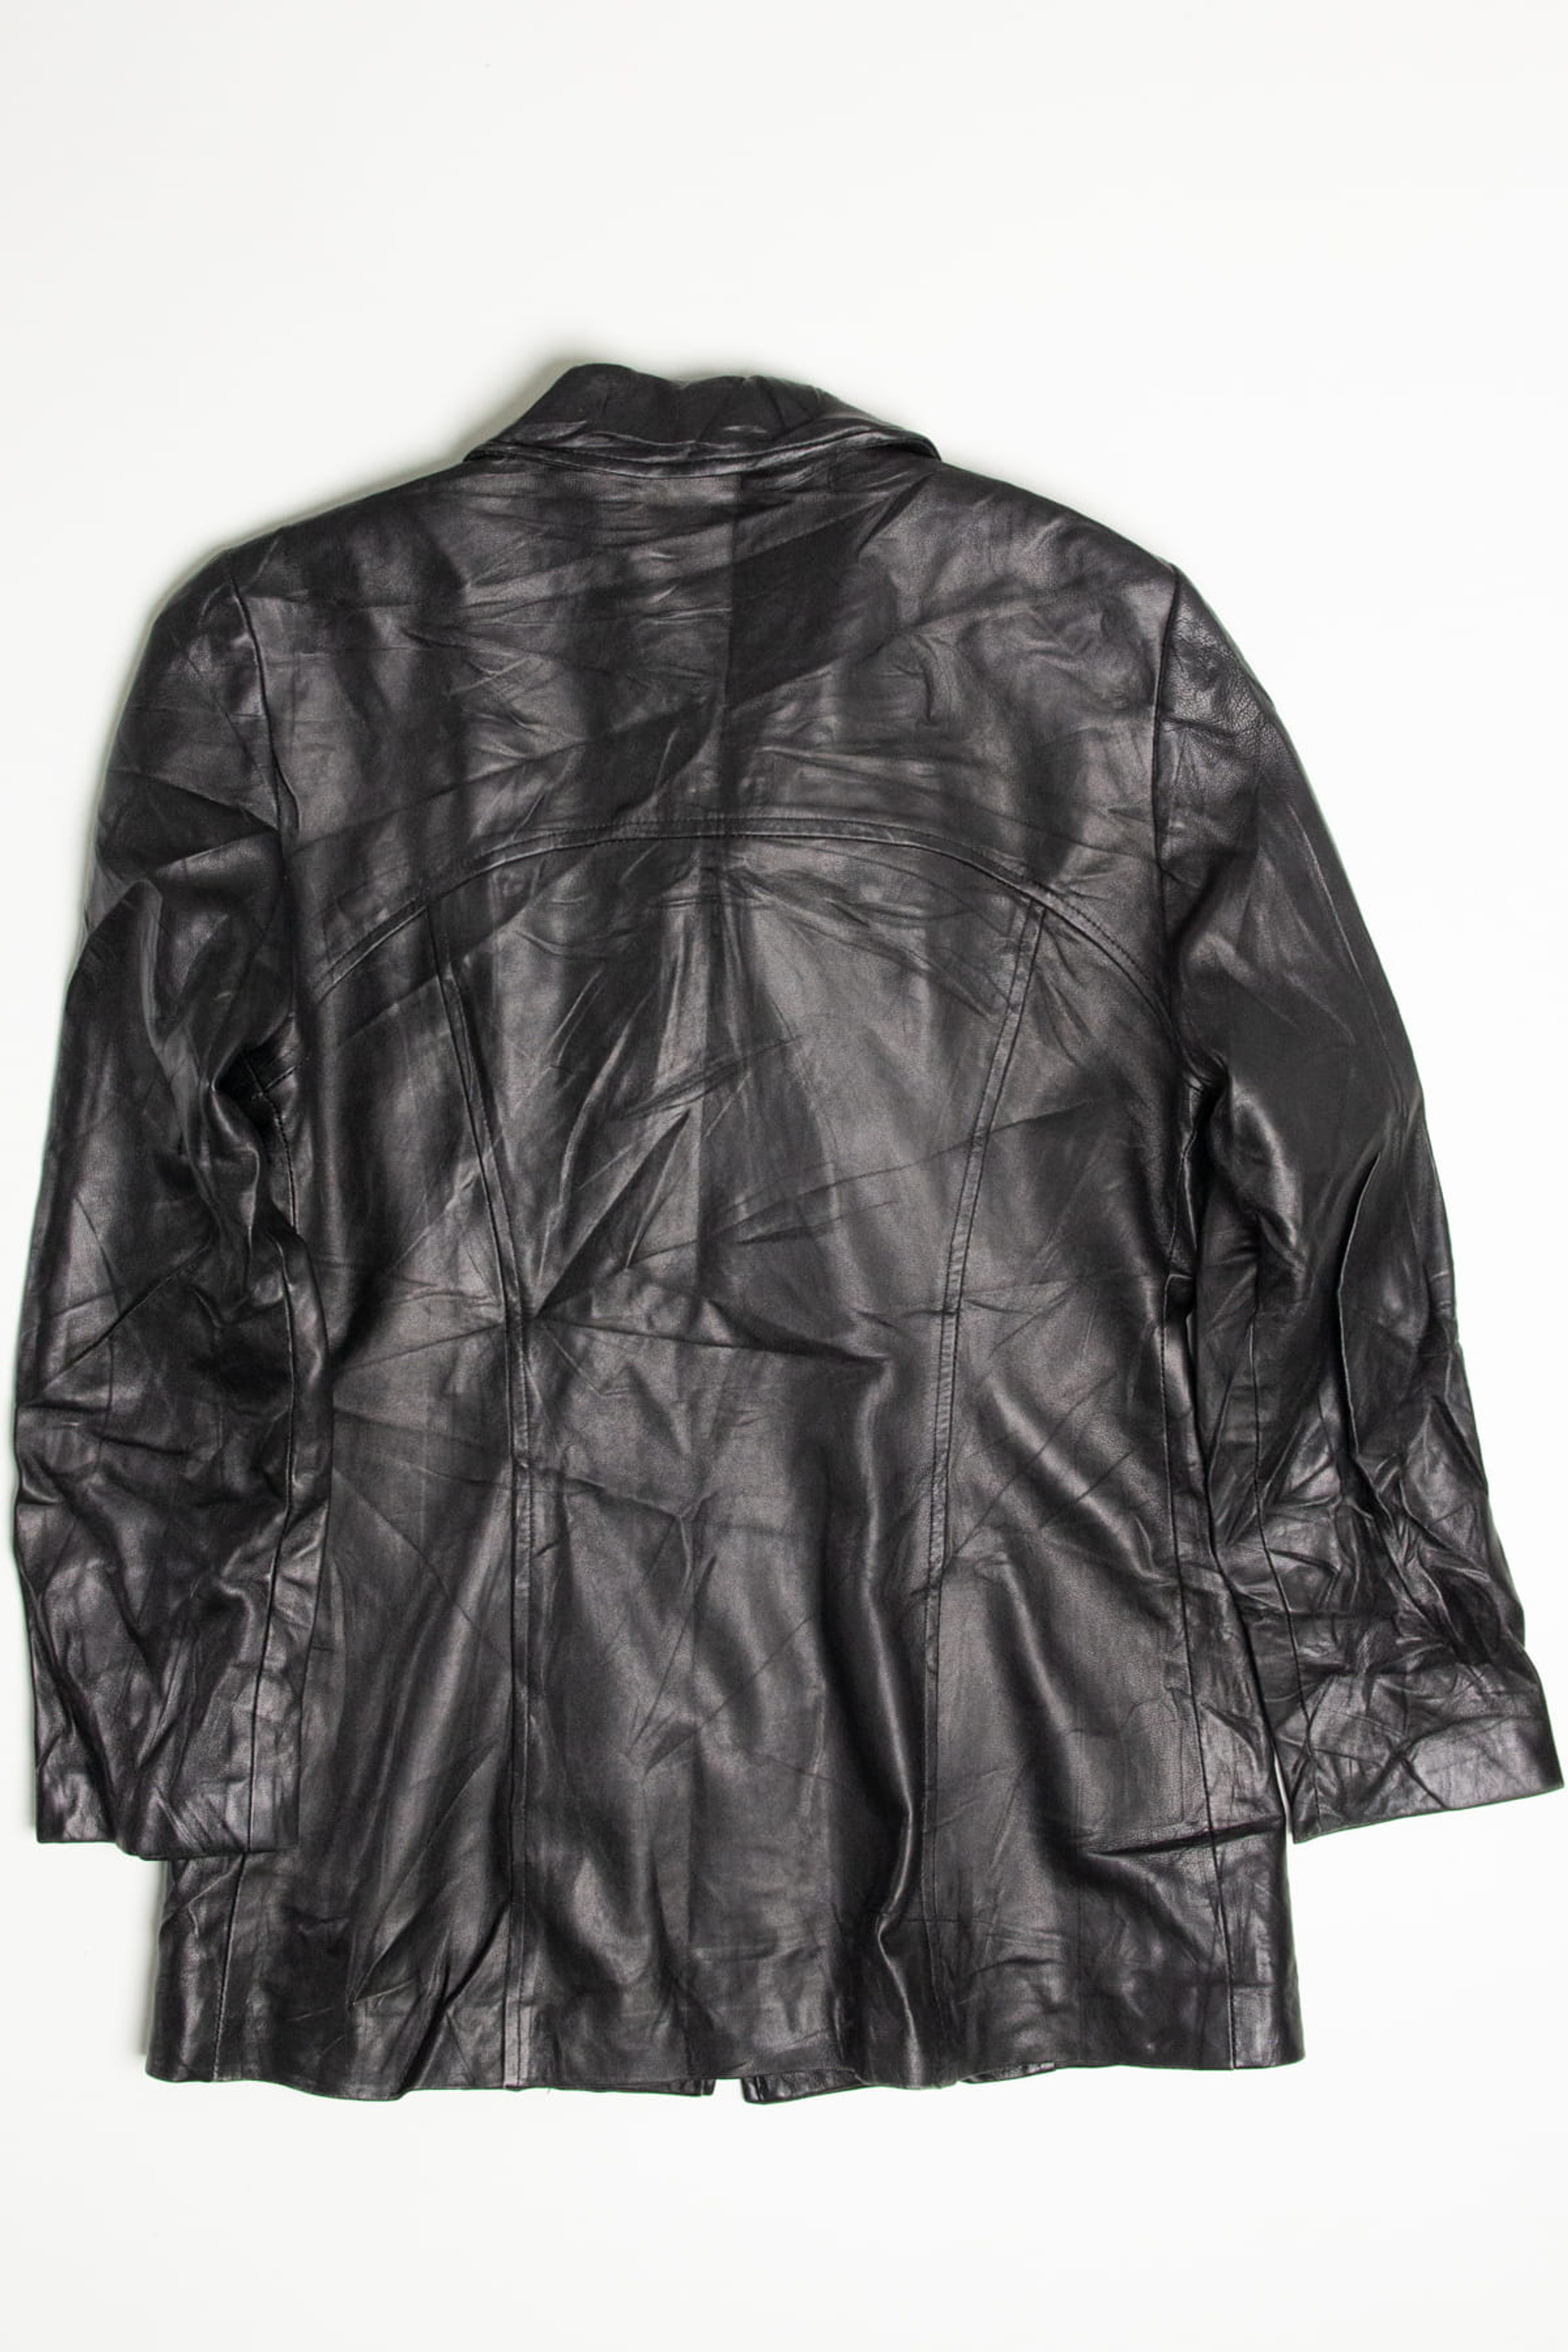 Danier Leather Field Jacket 257 - Ragstock.com